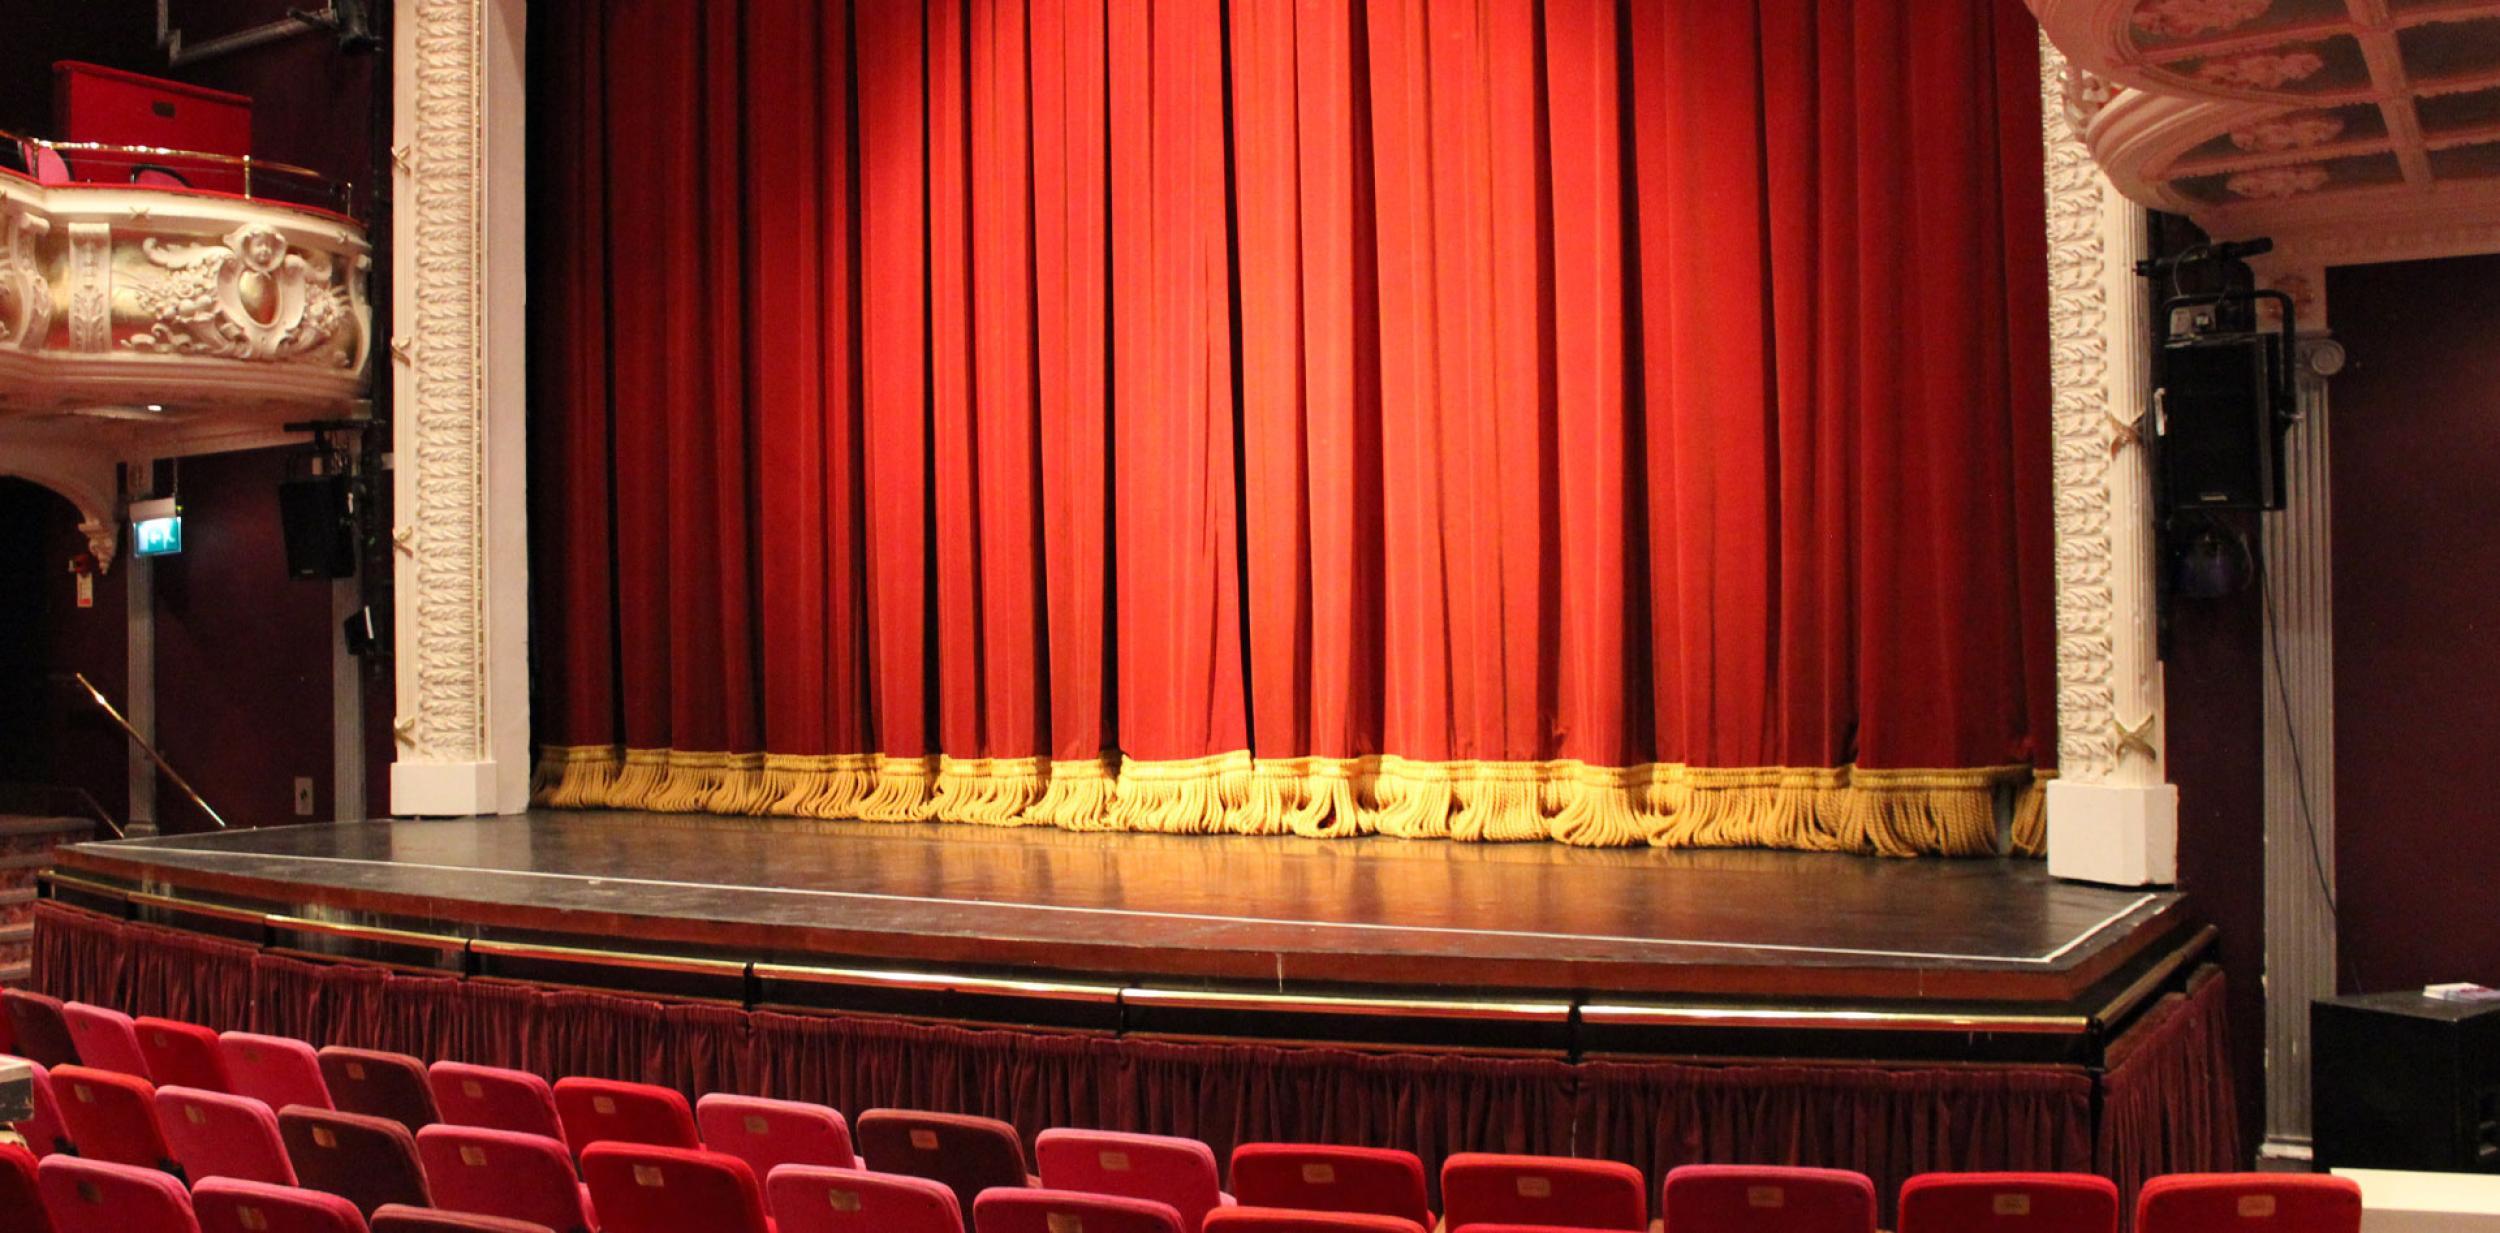 Theatre auditorium